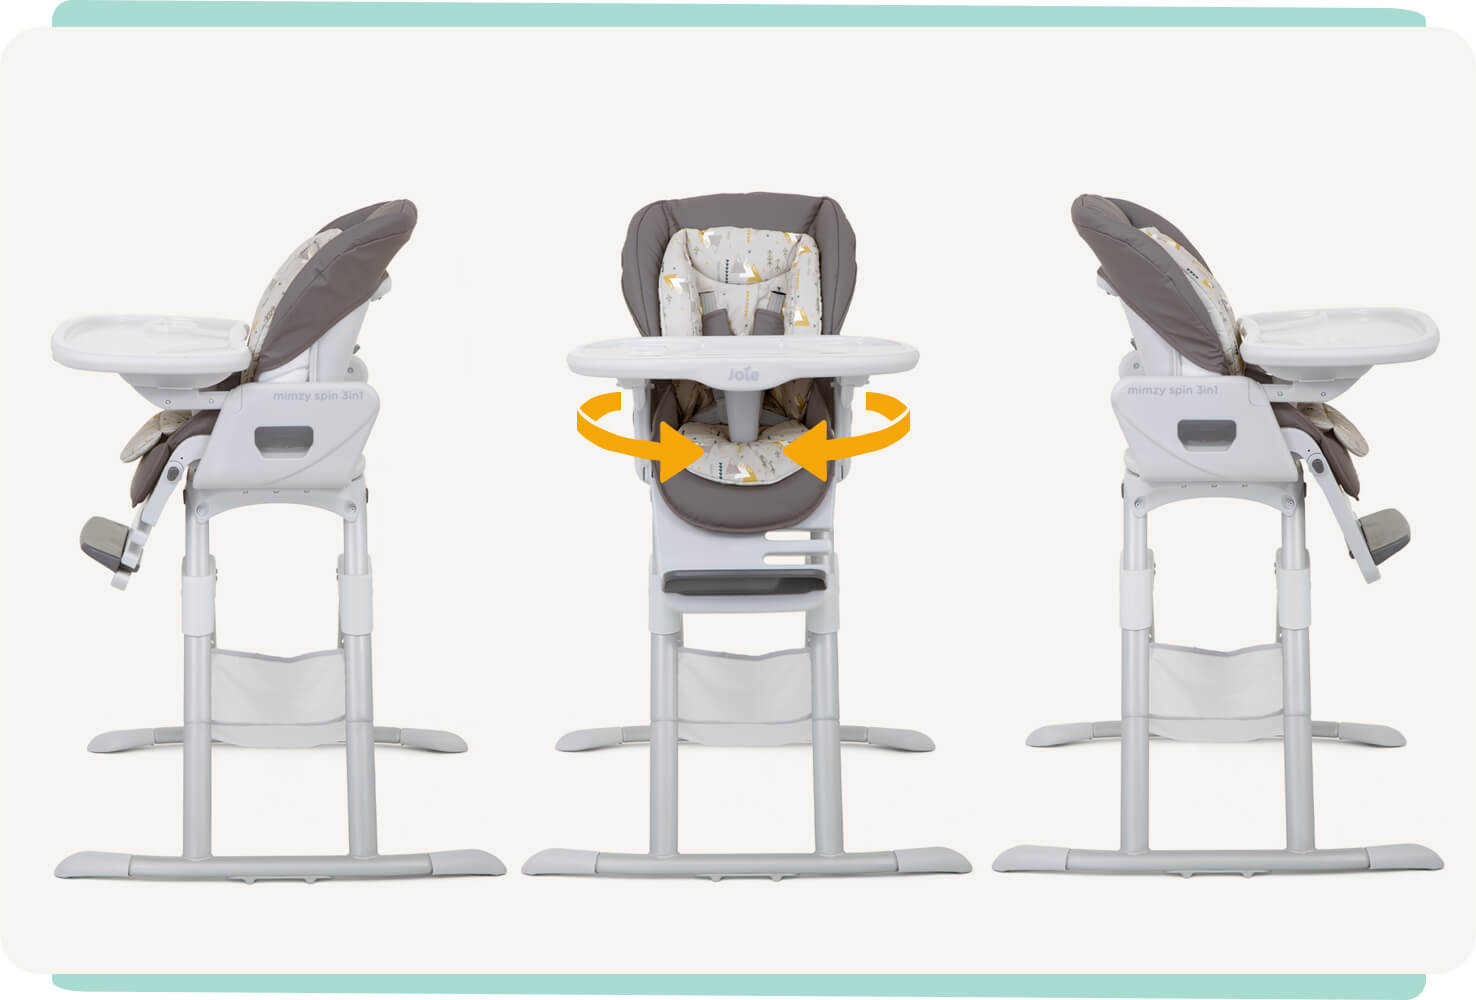  Trois chaises hautes Joie mimzy Spin 3in1. Les deux chaises hautes sur les bords sont visibles en vue latérale tournée vers l’extérieur, tandis que celle du milieu est une vue de face recouverte de flèches incurvées arrivant derrière chaque côté pour ind